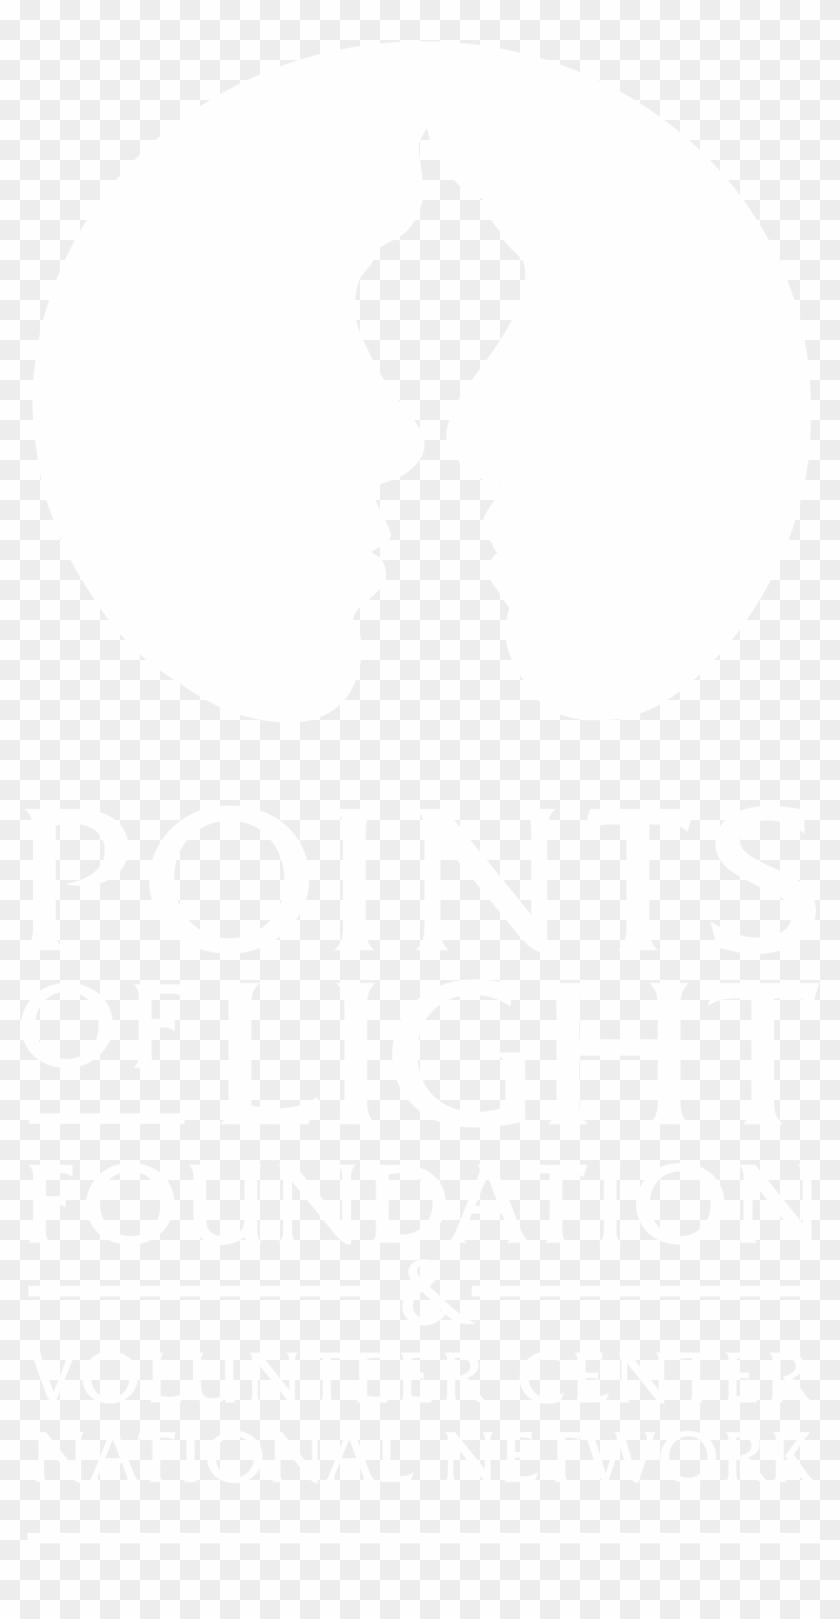 Points Of Light Foundation & Volunteer Center National - Johns Hopkins Logo White Clipart #4677570